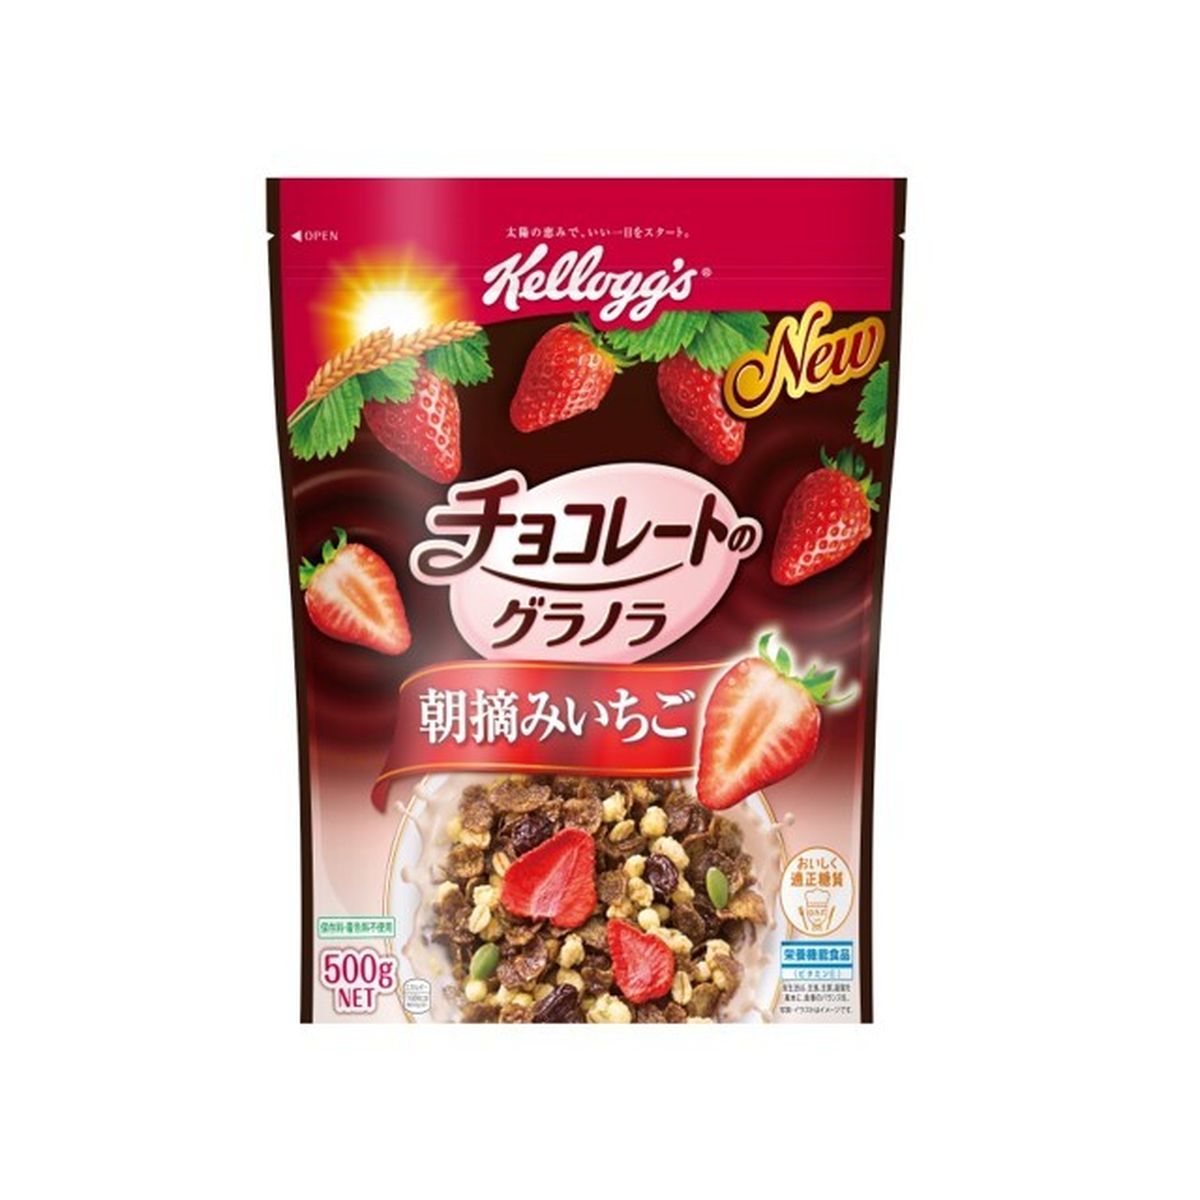 【6個入り】ケロッグ チョコレートのグラノラ 朝摘いちご 500g